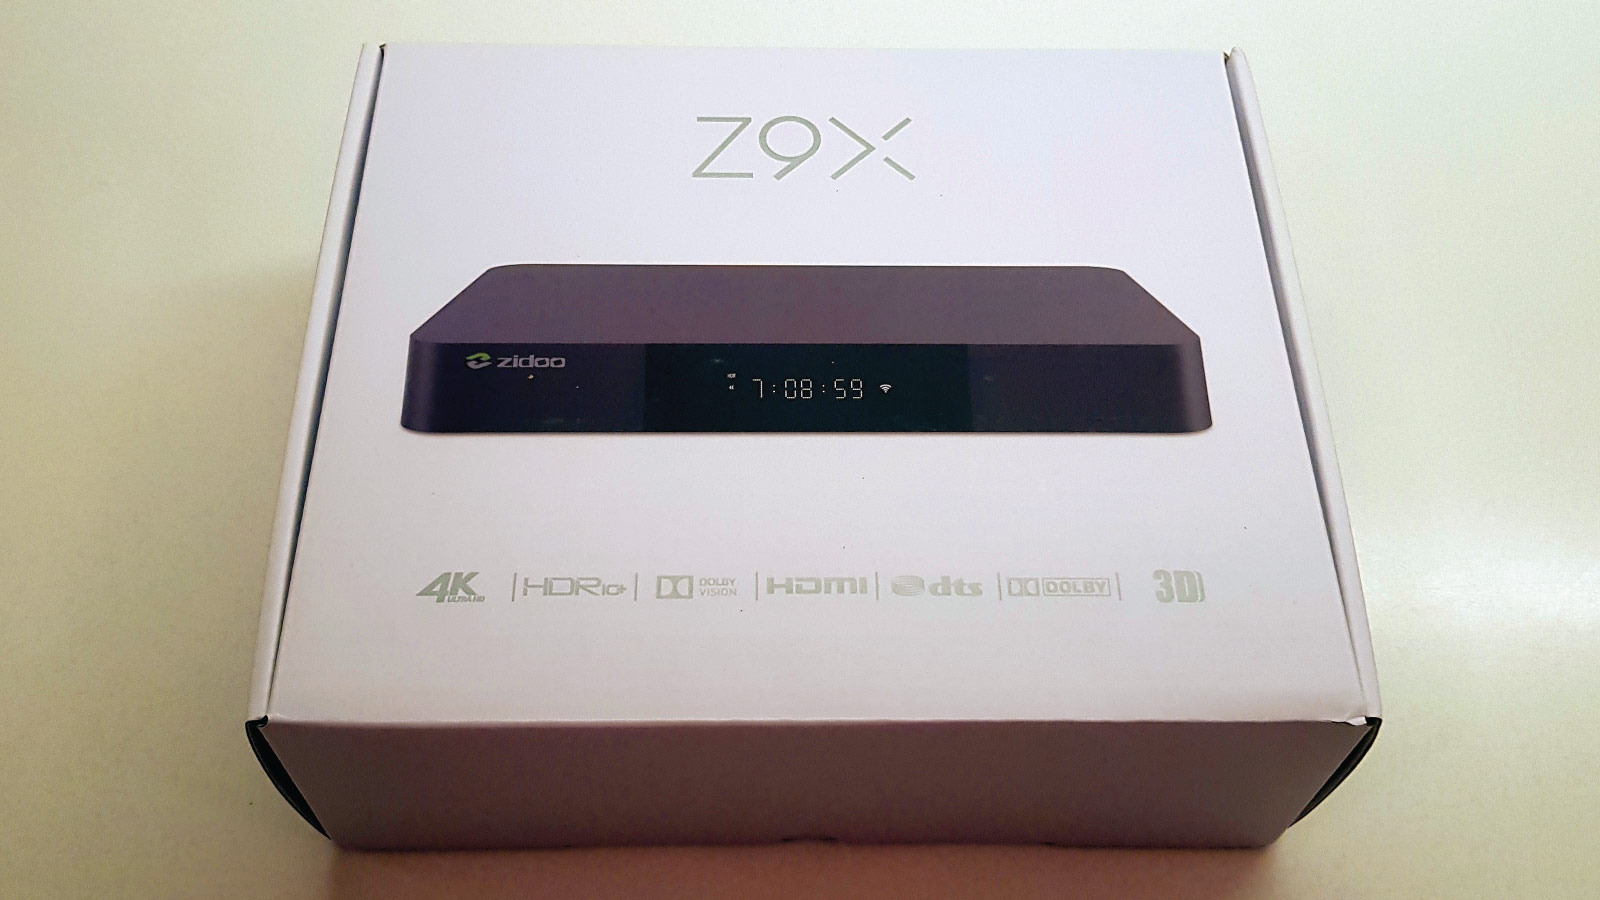 Zidoo Z9X packing